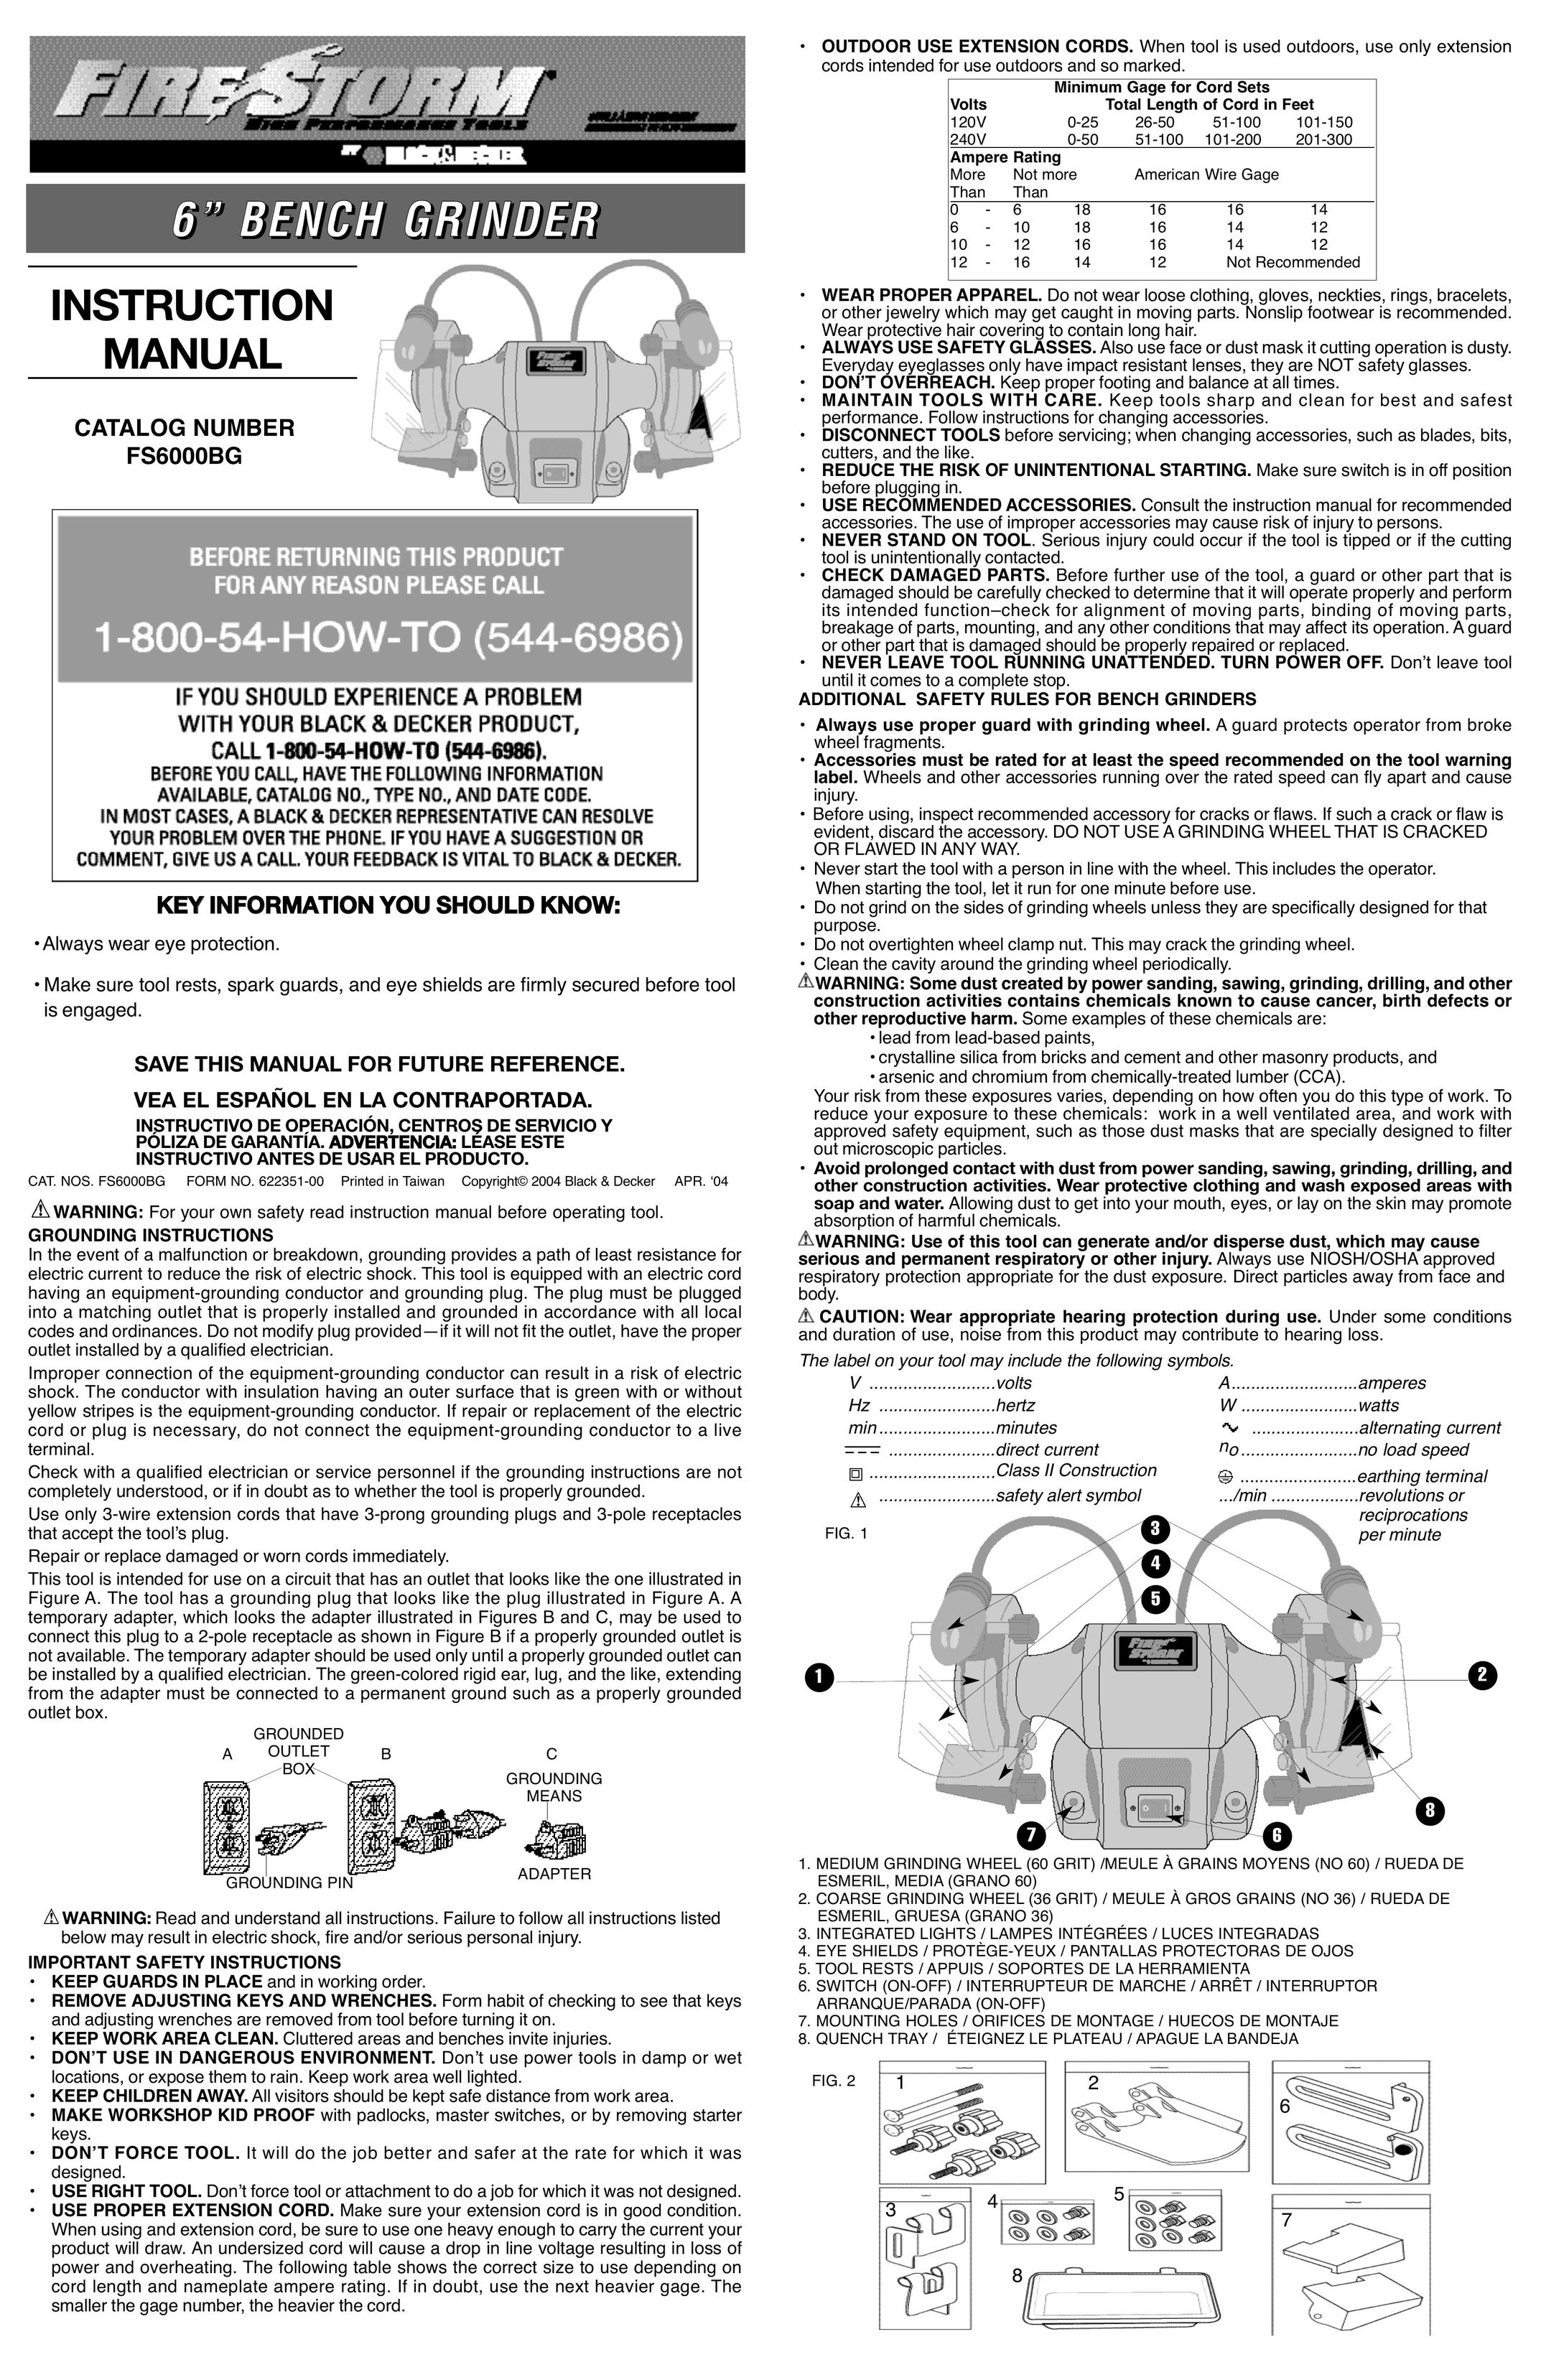 Black & Decker FS6000BG Grinder User Manual